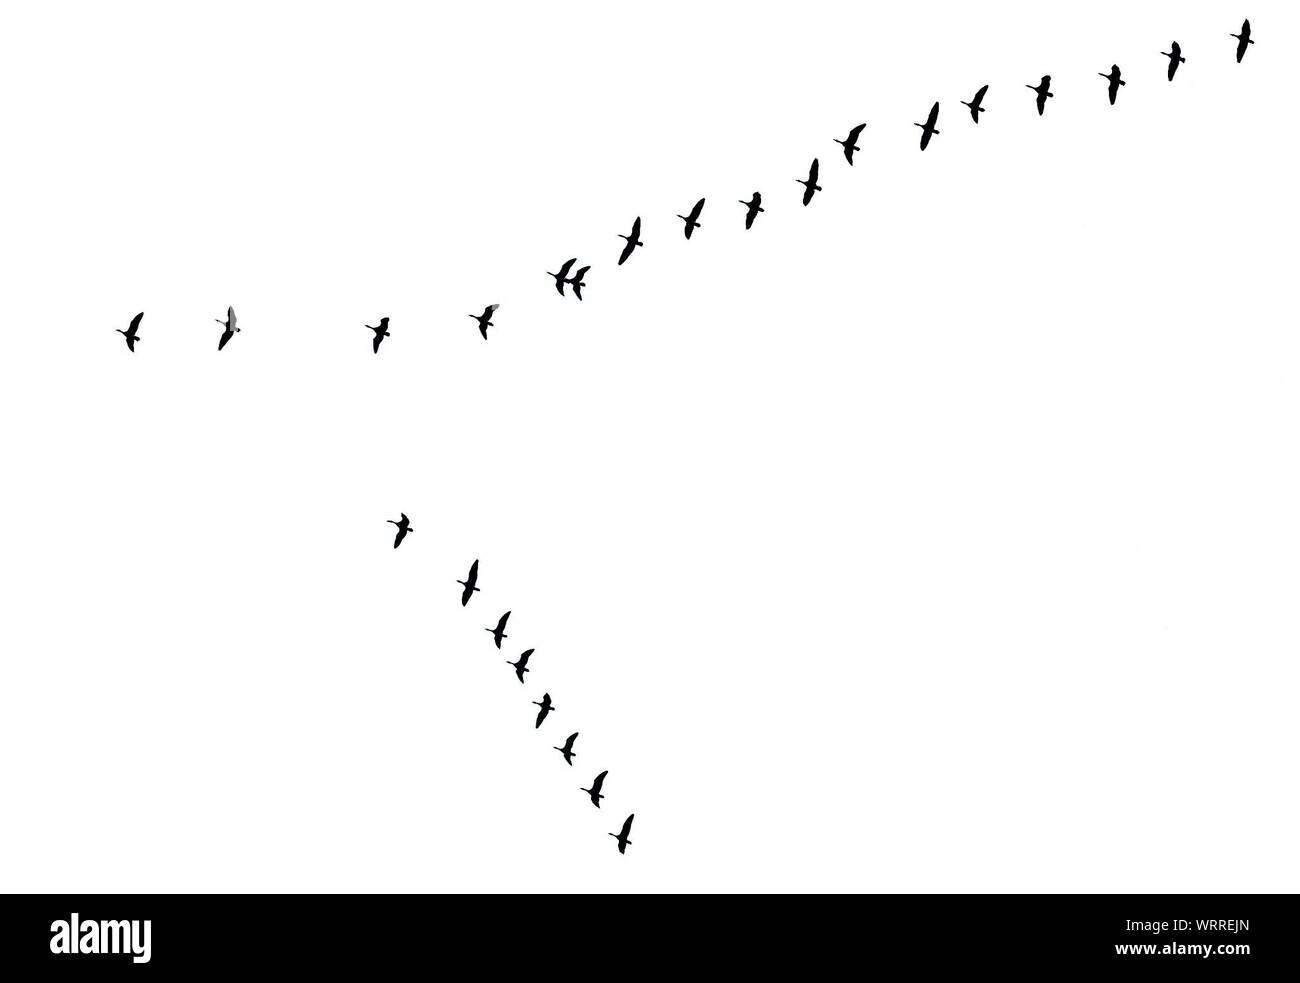 Image en noir et blanc d'oiseaux volant Banque D'Images